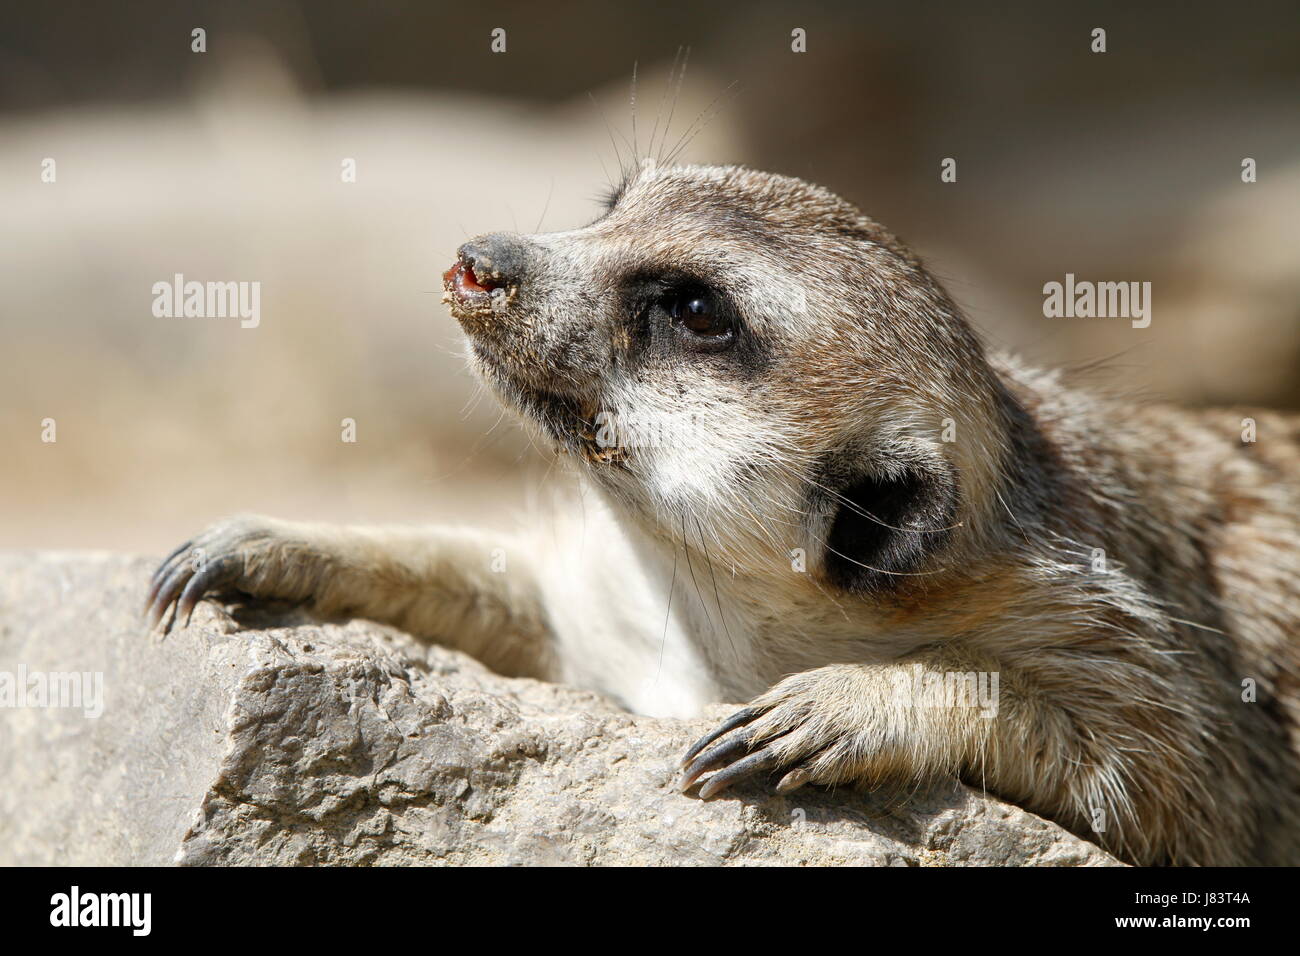 meerkats in close Stock Photo